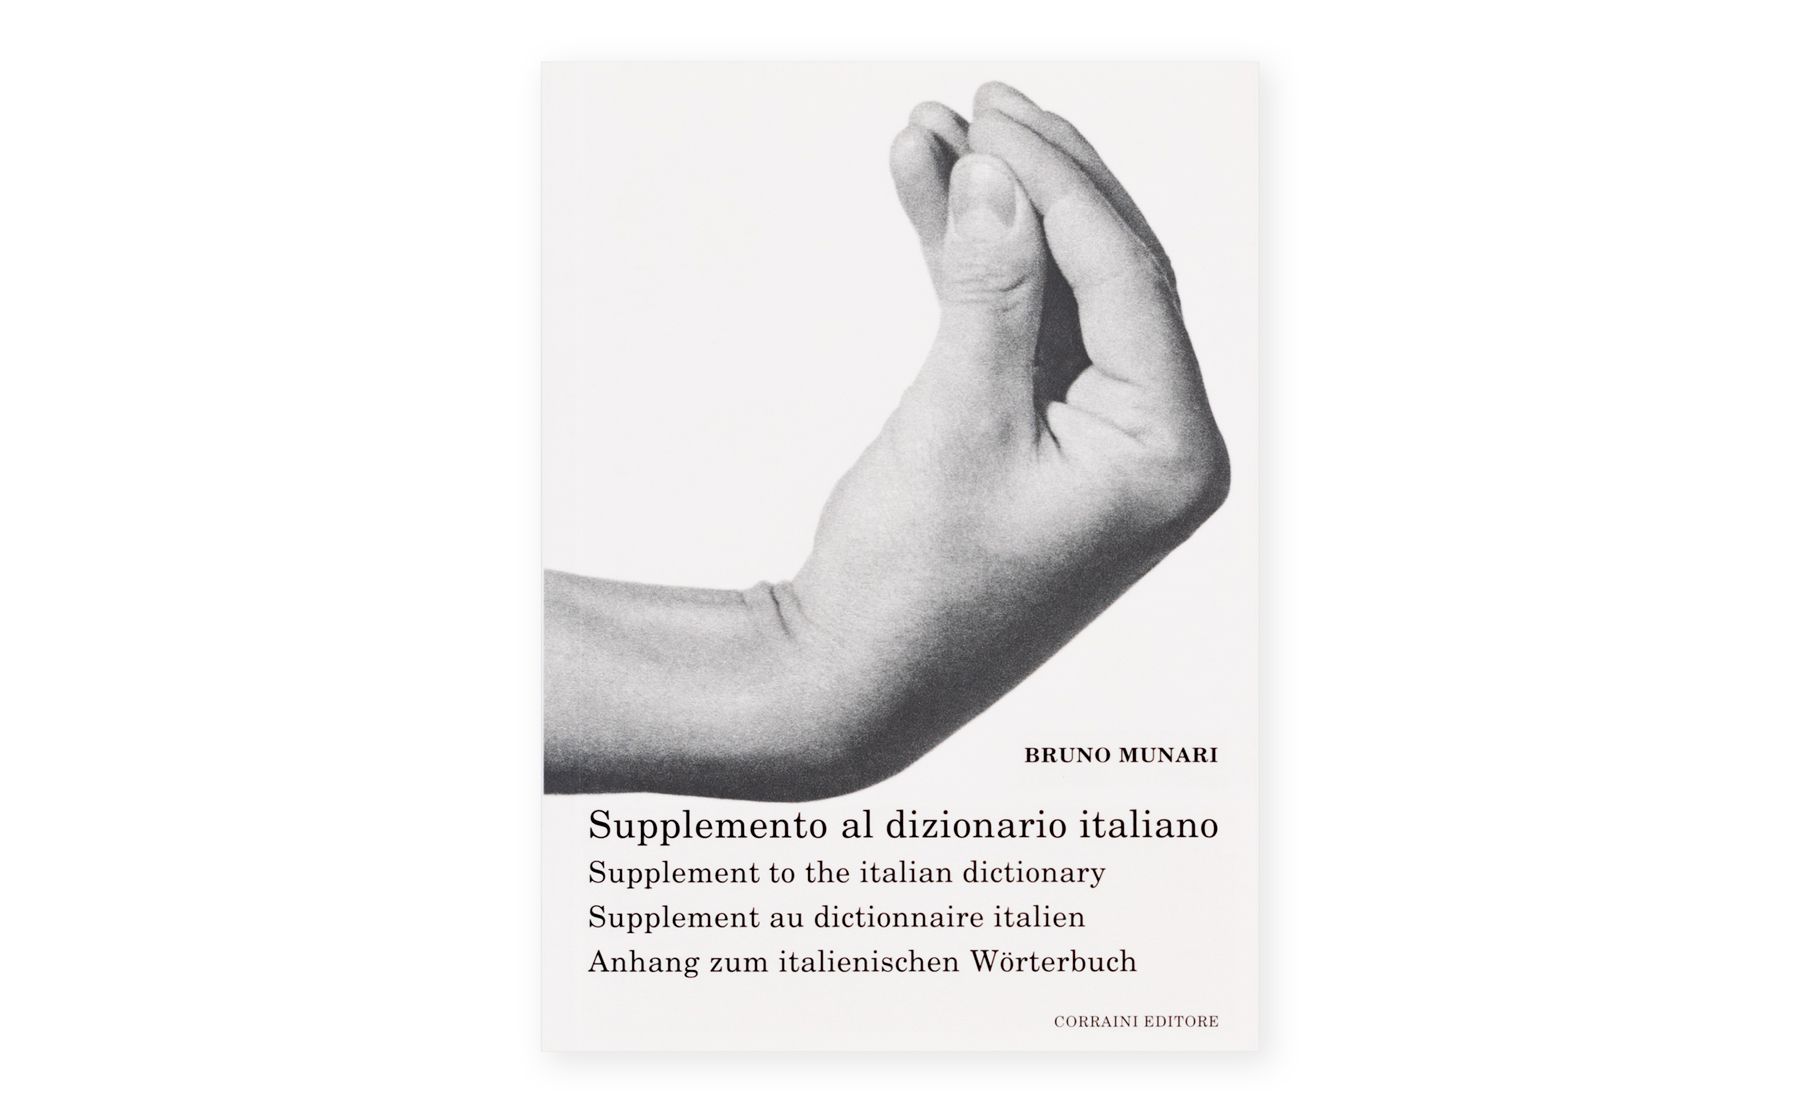 Bruno Munari - Supplement to the Italian dictionary